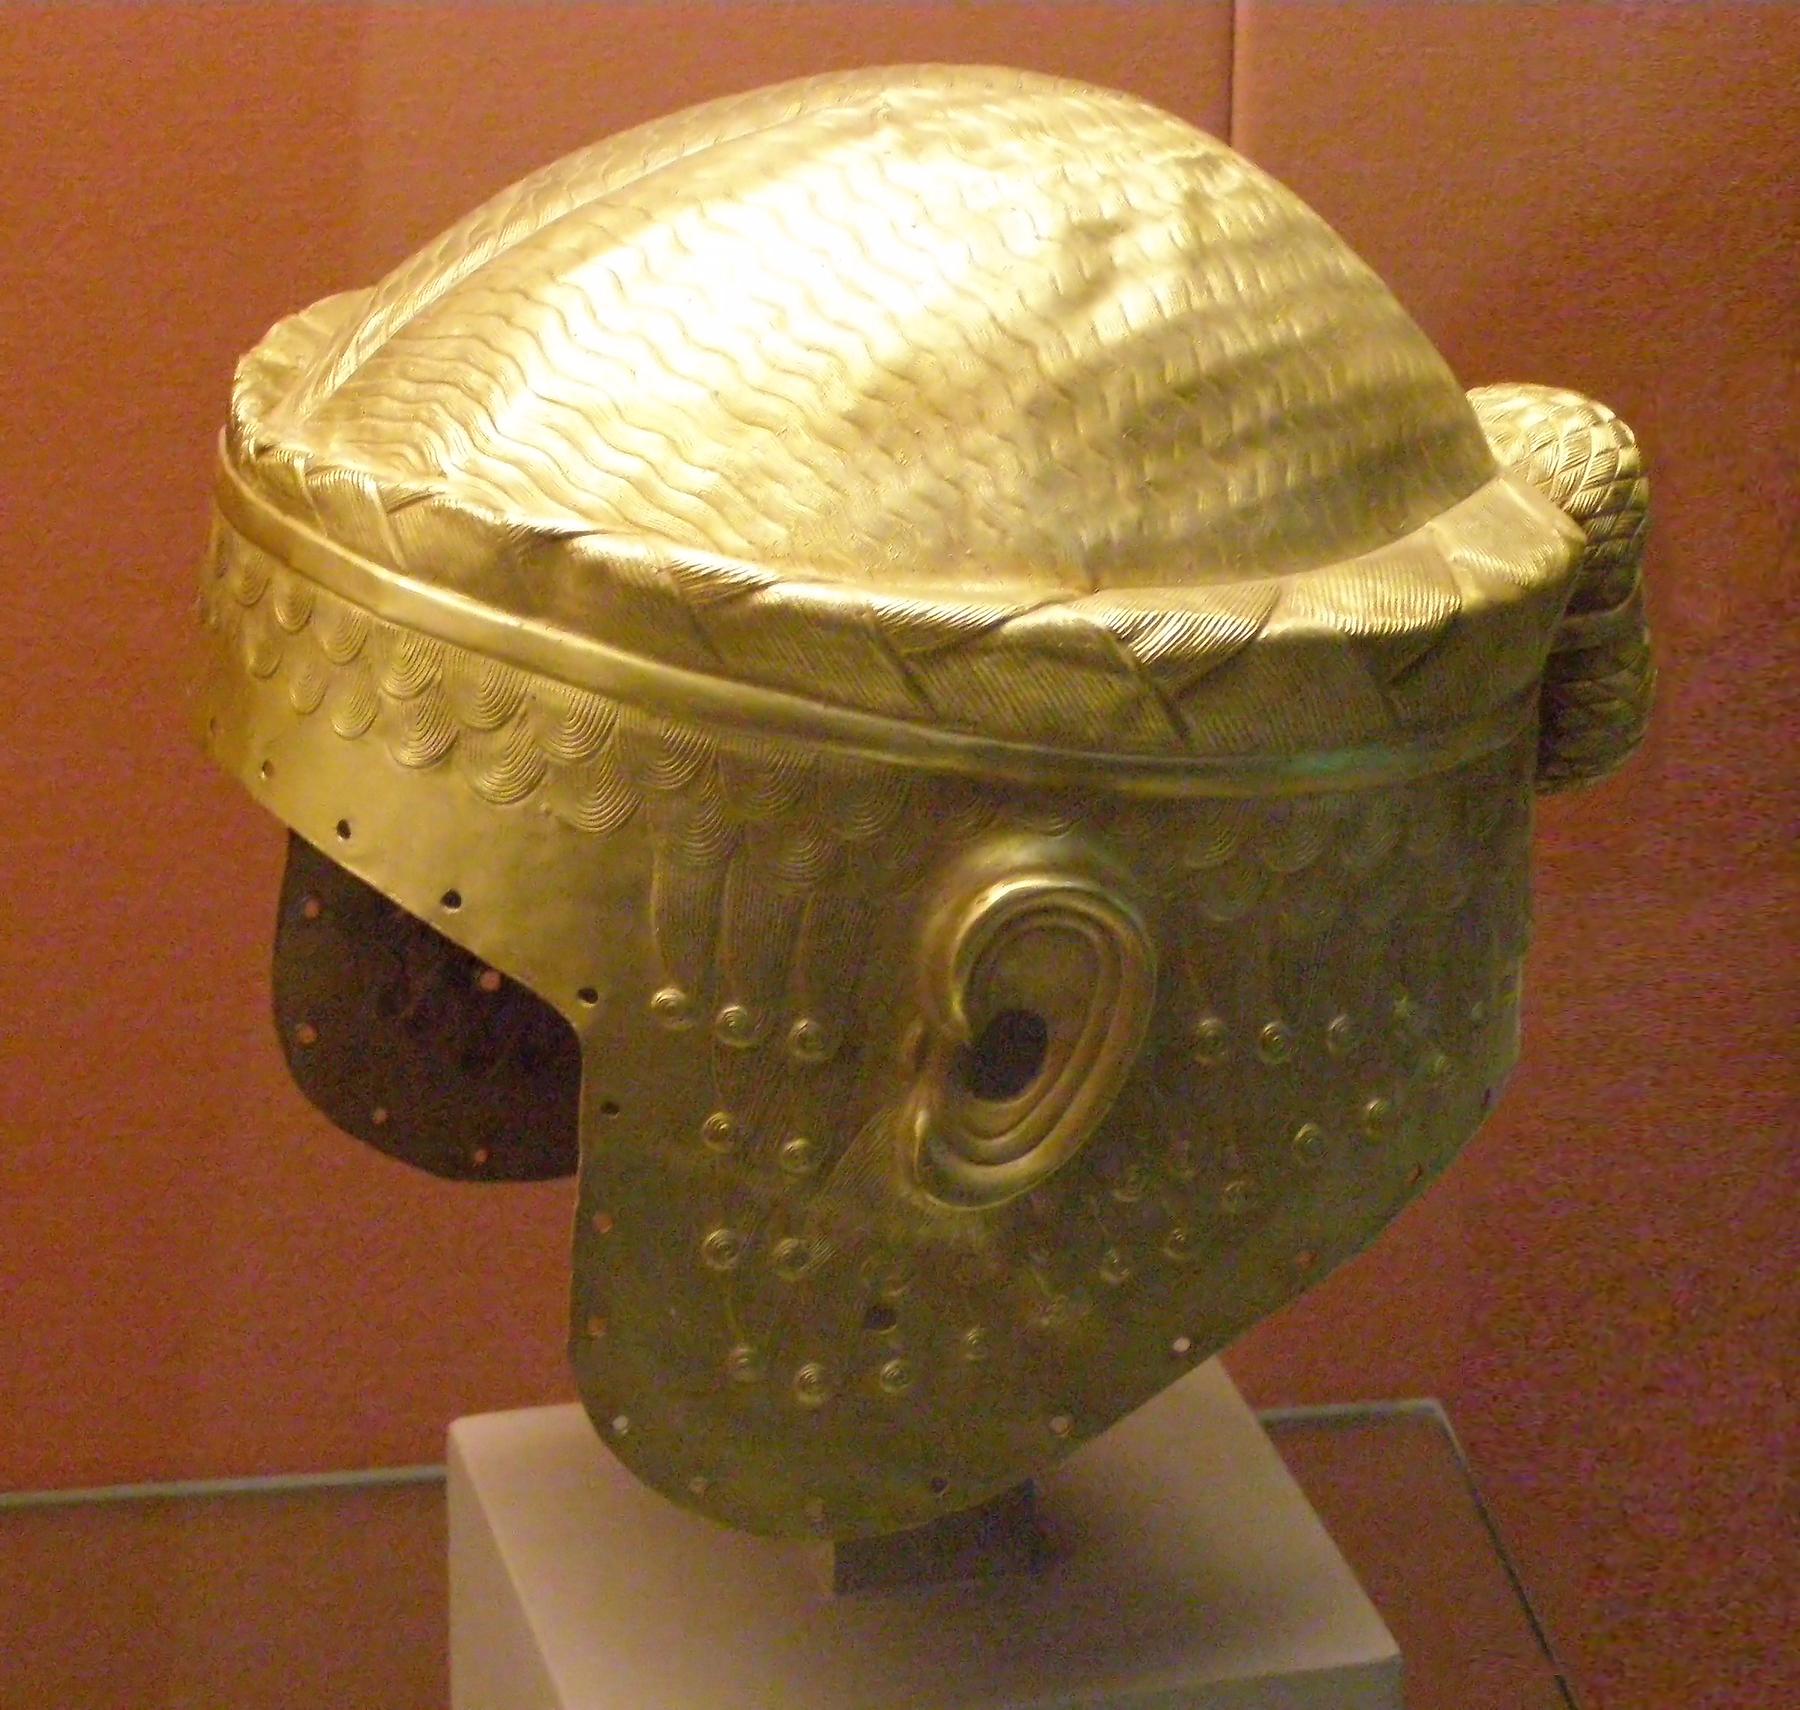 File:Golden helmet of Meskalamdug in the British Museum.jpg - Image of Helmets, cycling Helmet Selec